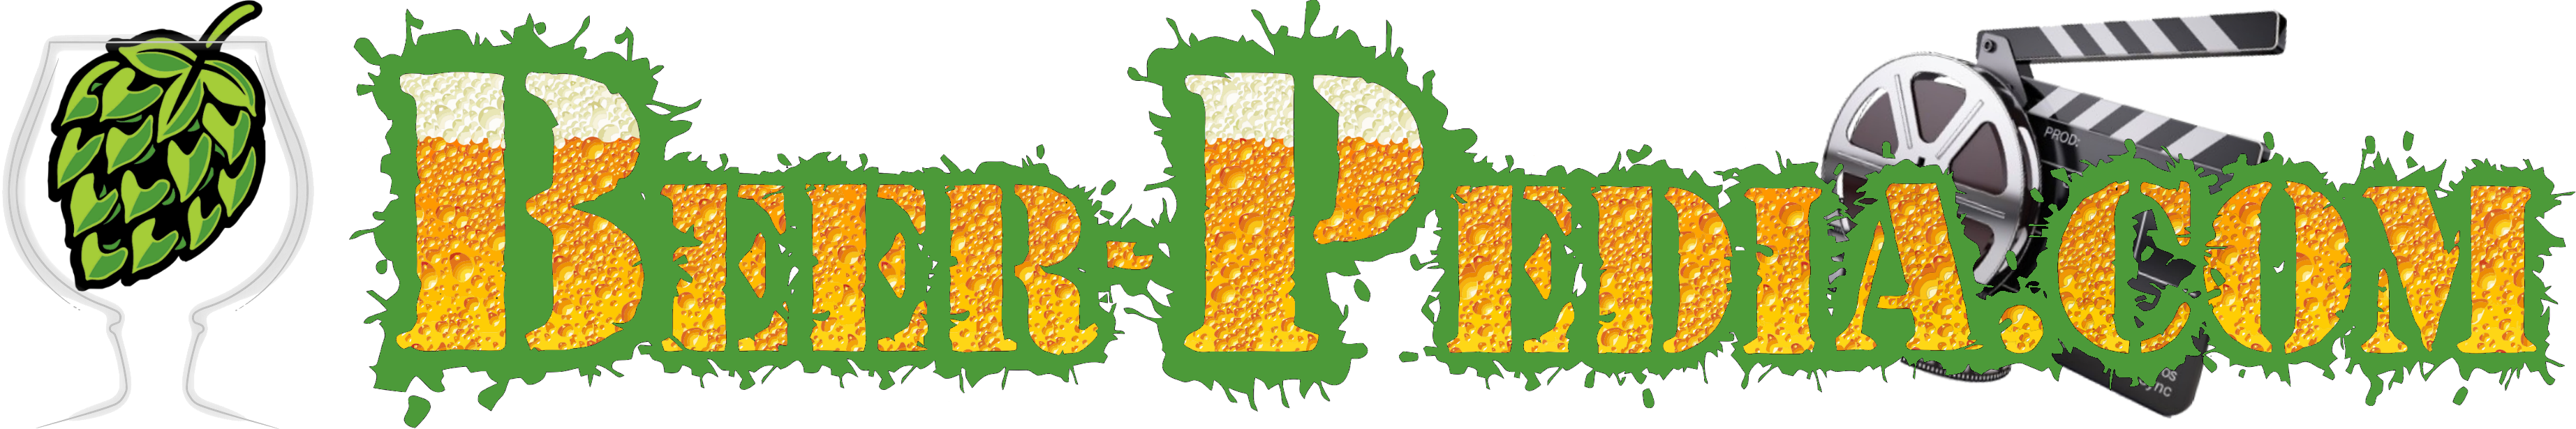 www.Beer-Pedia.com